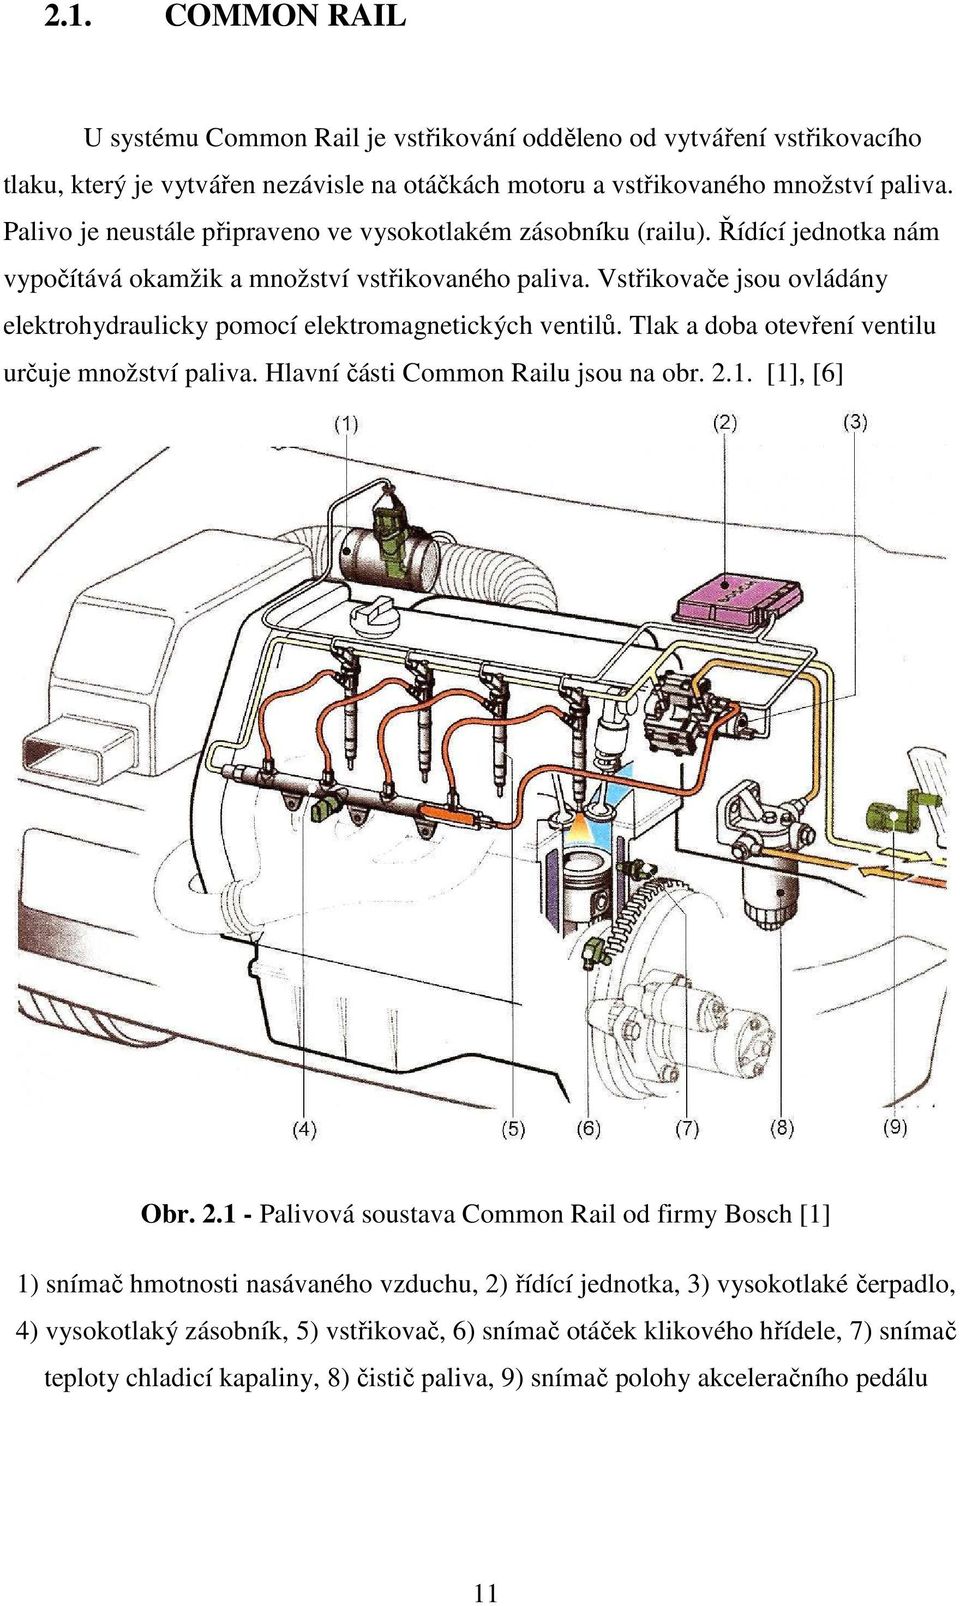 Vstřikovače jsou ovládány elektrohydraulicky pomocí elektromagnetických ventilů. Tlak a doba otevření ventilu určuje množství paliva. Hlavní části Common Railu jsou na obr. 2.